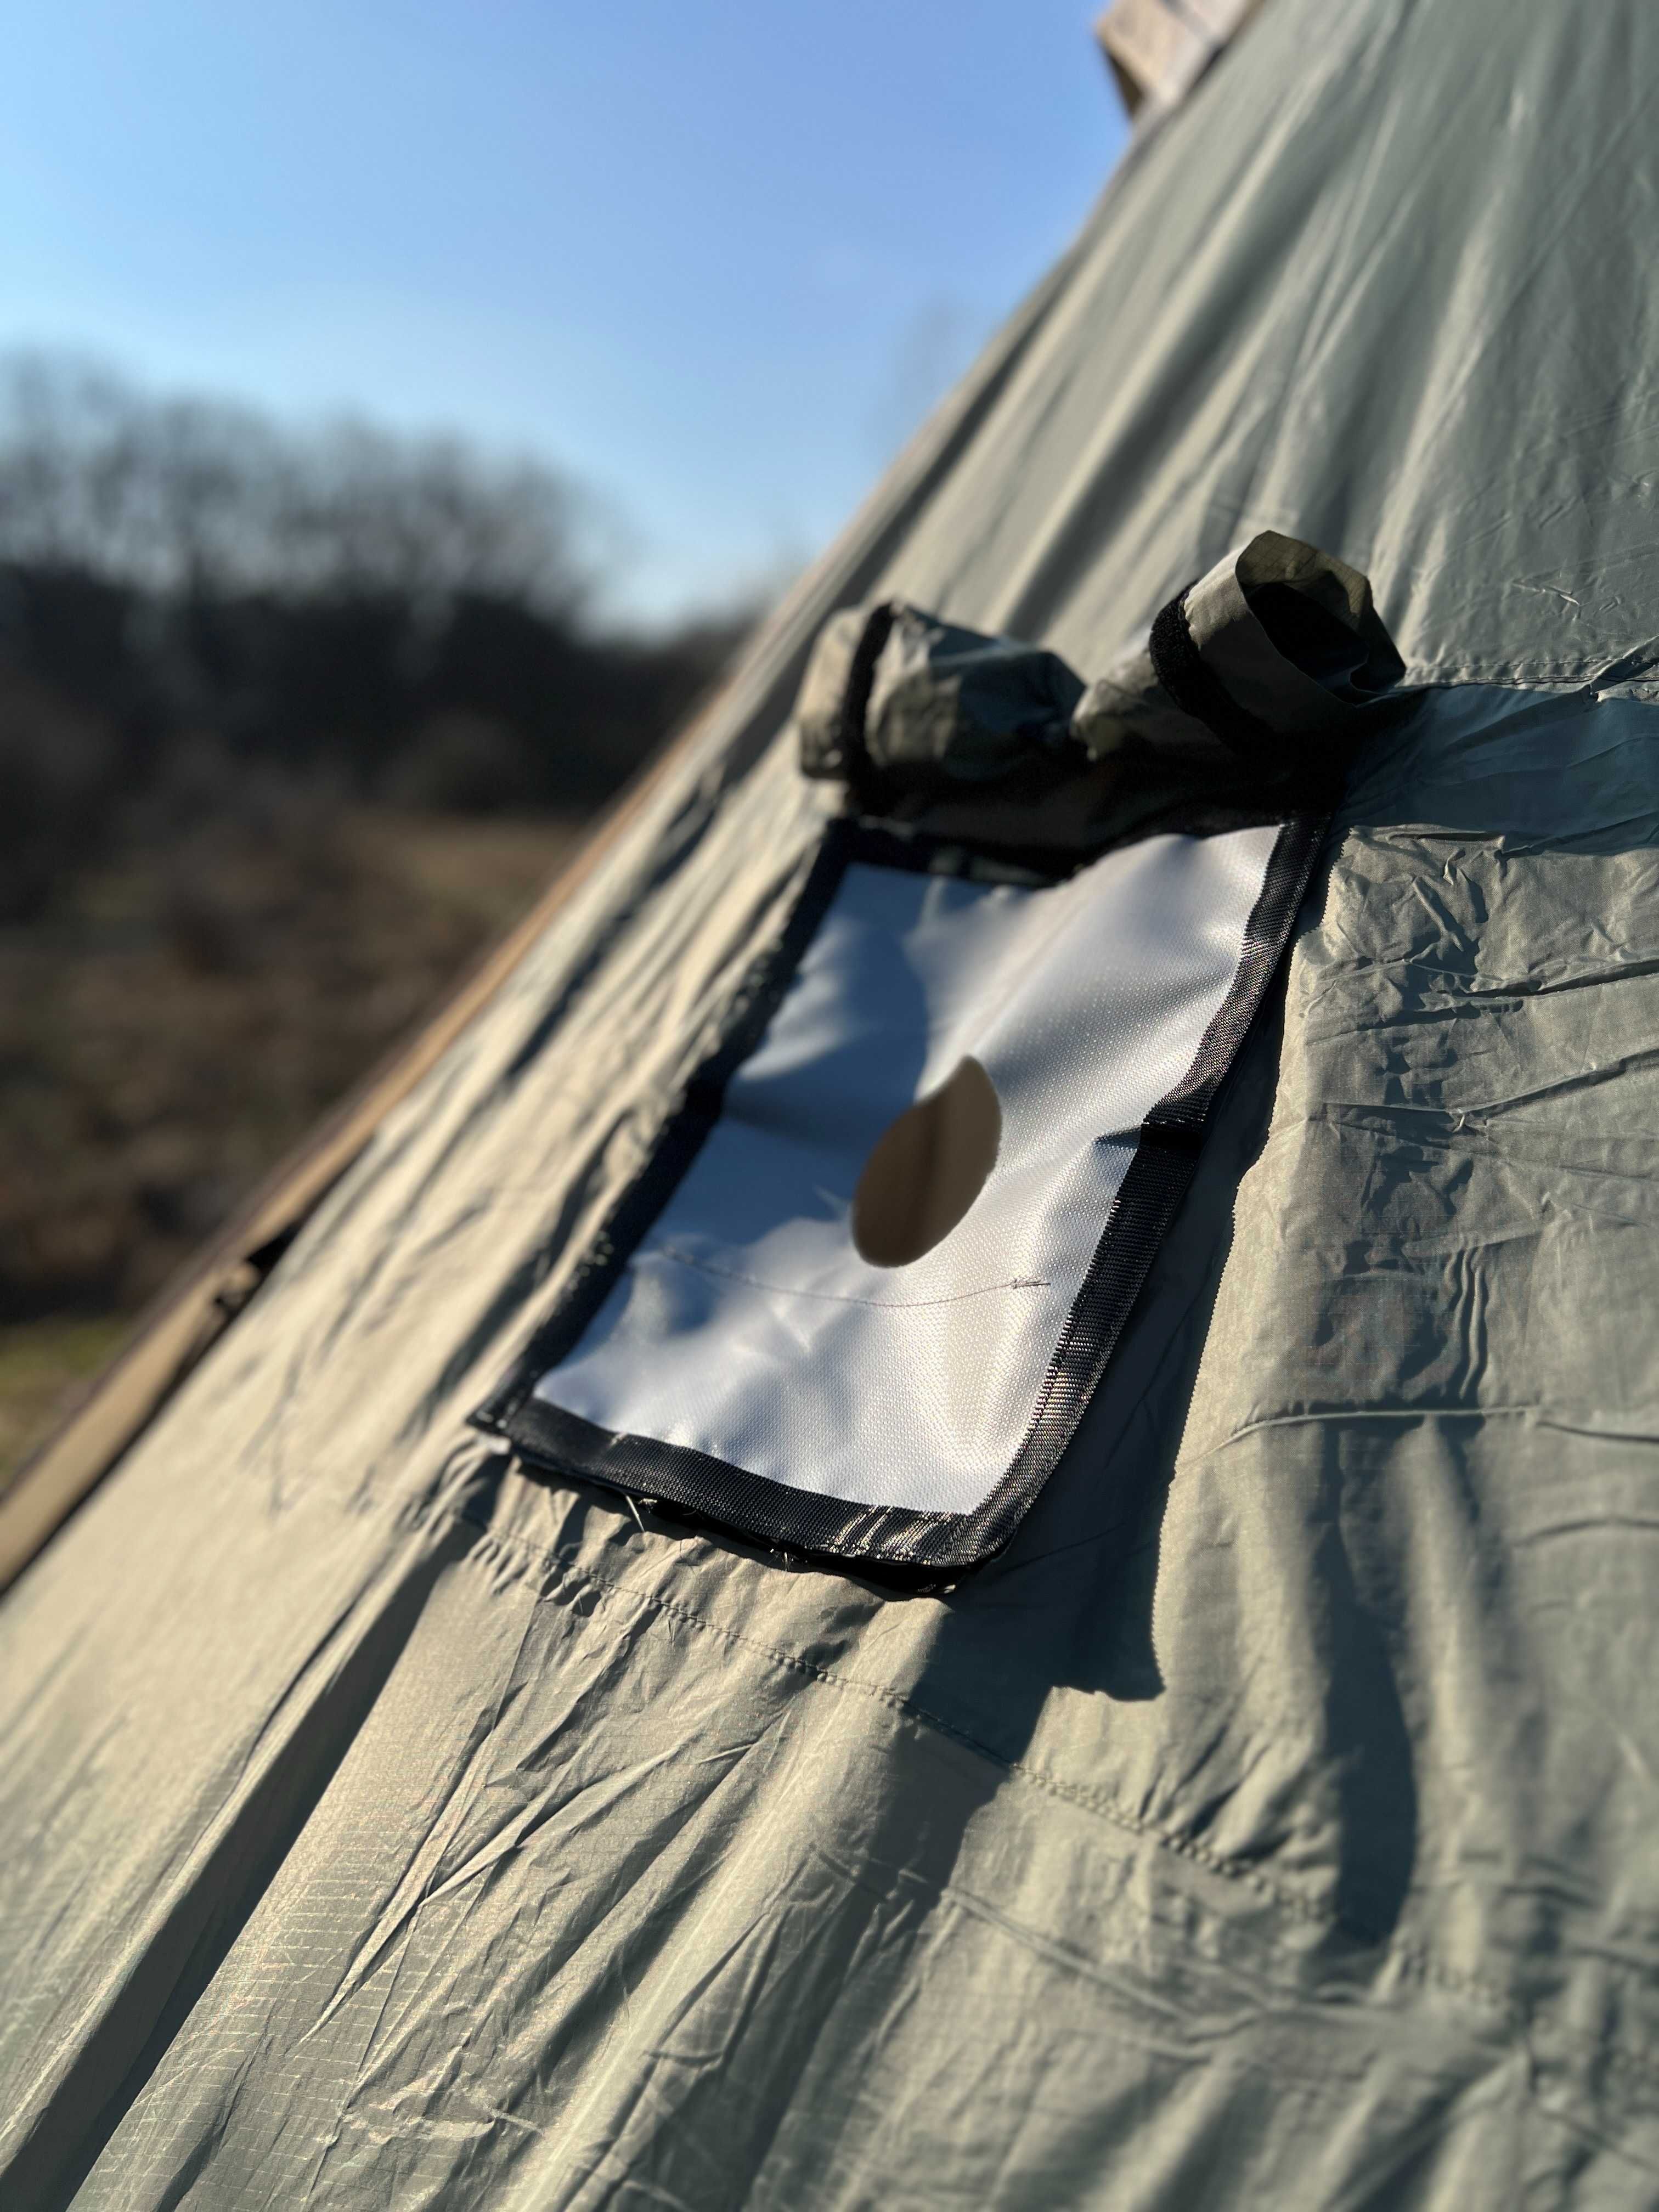 CADOU! Cort Hot tent Teepee Blackdeer- Vand Urgent